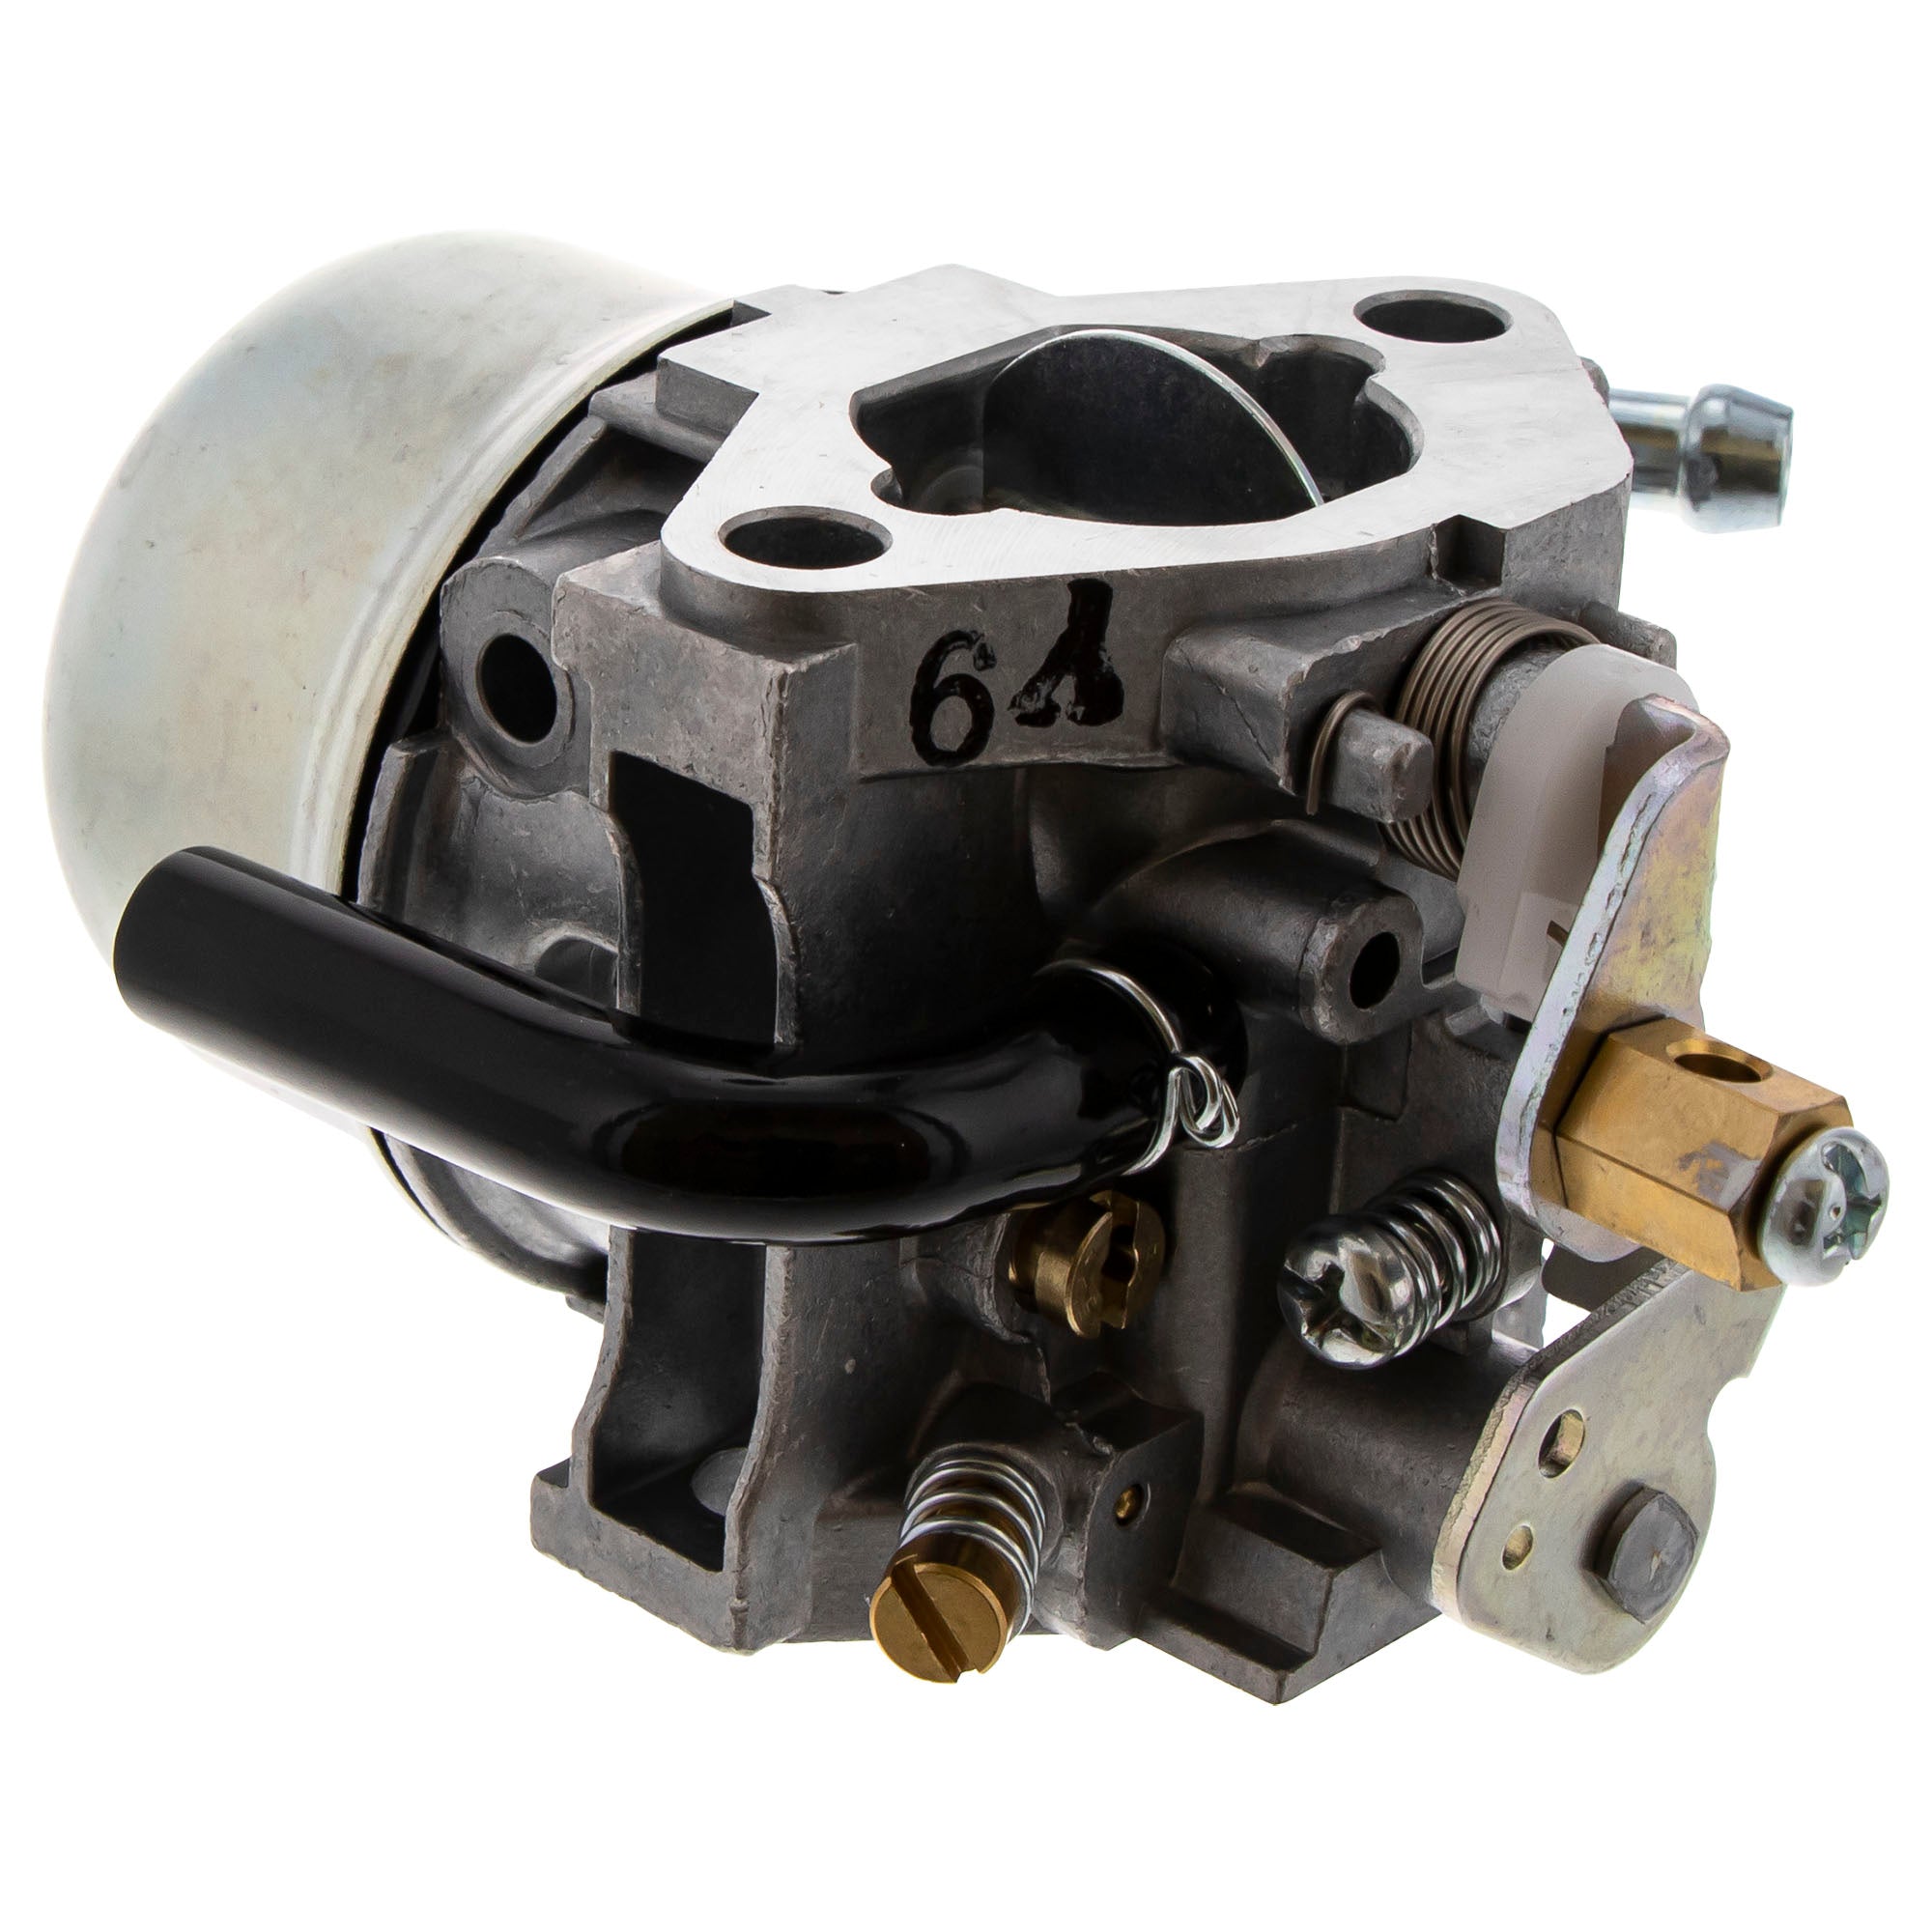 Genuine OEM Arctic Cat Carburetor Assembly Cat 0694-028